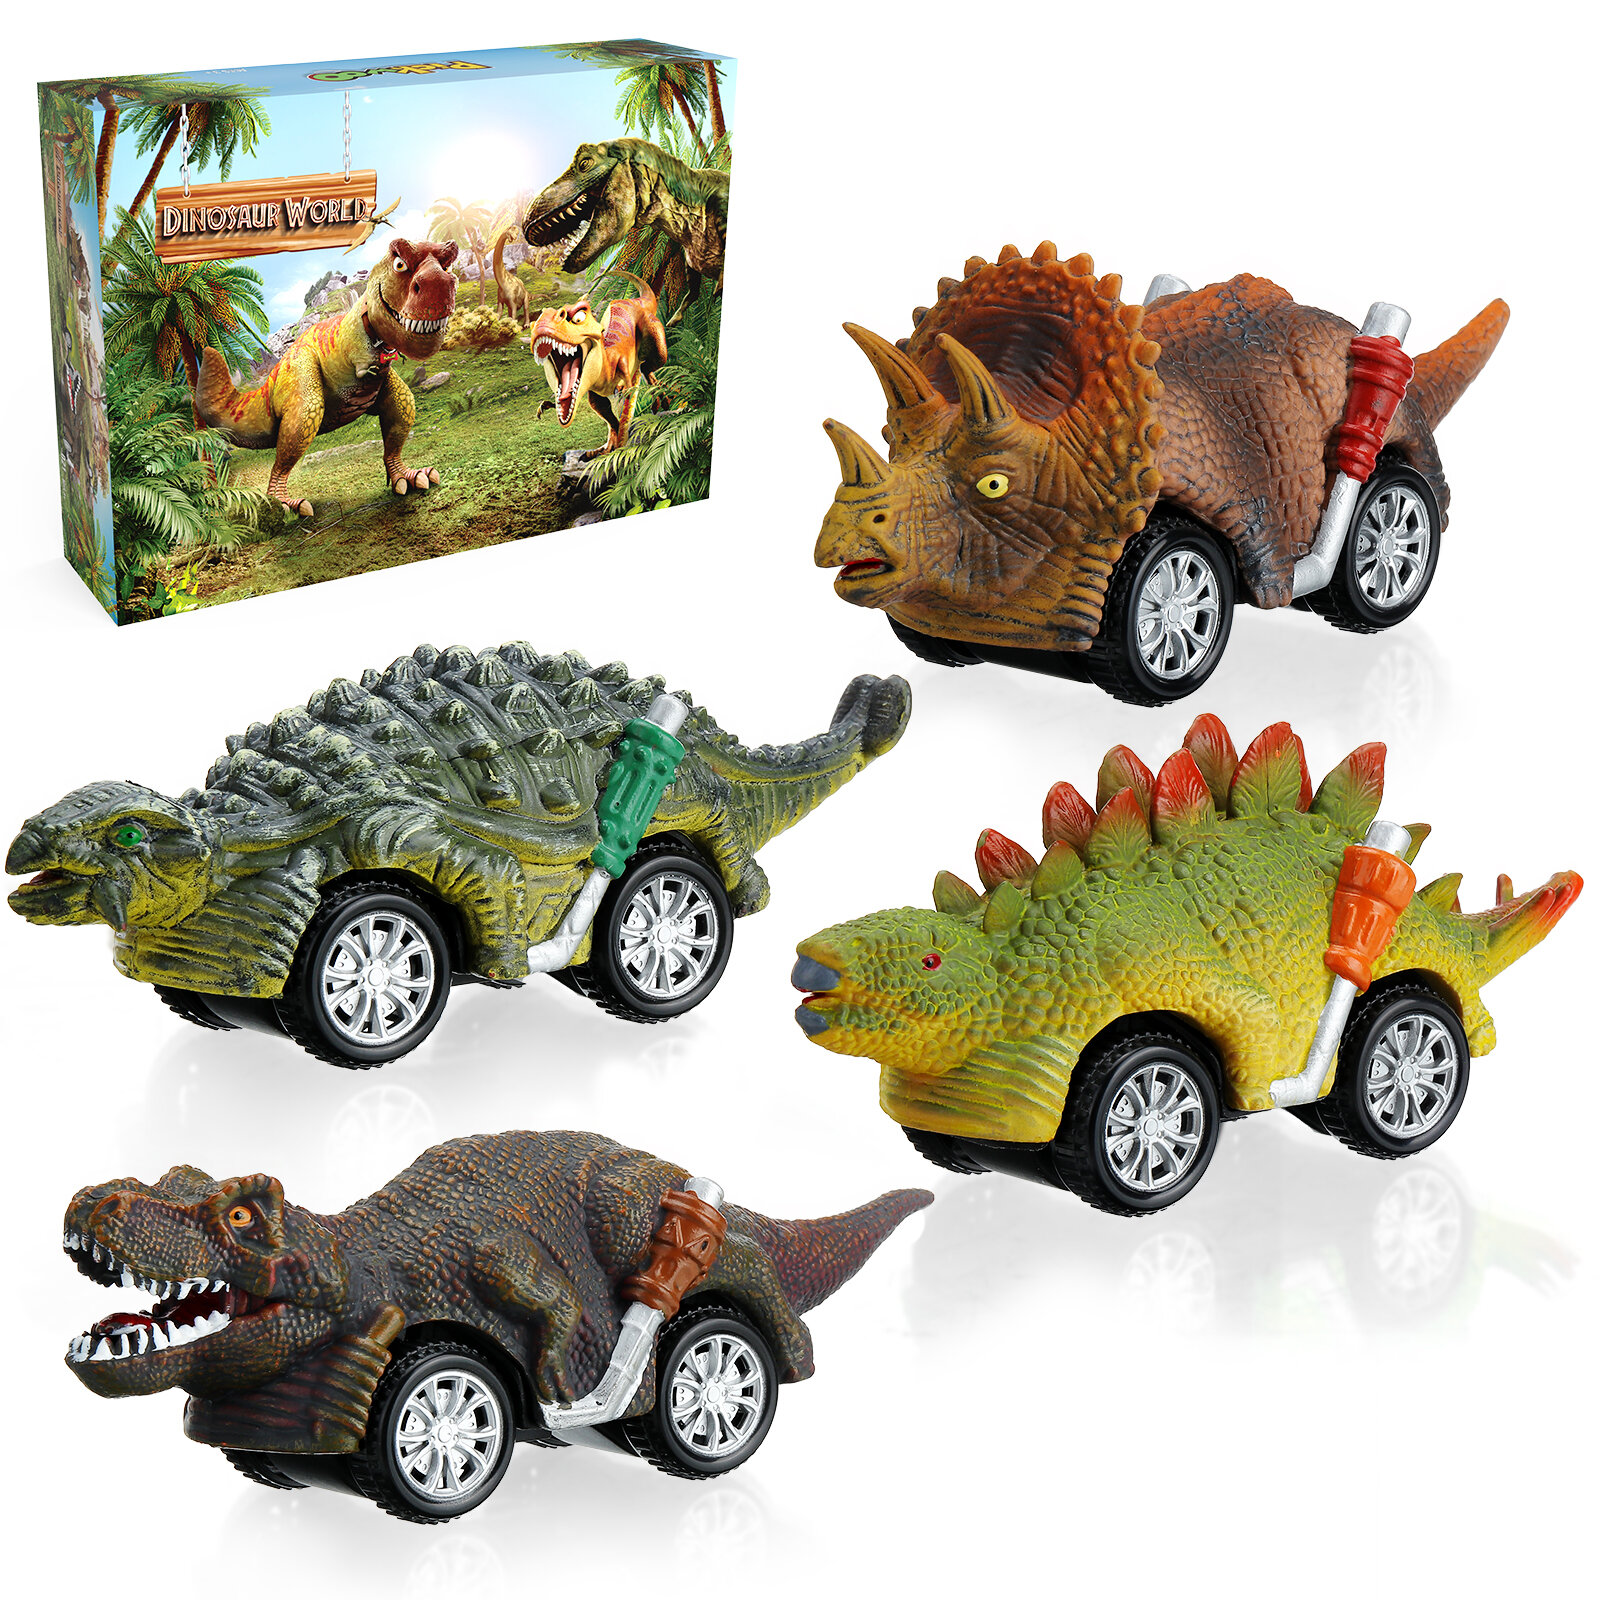 Pickwoo Dinosaurus Speelgoed Cars Inertie Voertuigen Peuters Kids Dinosaurus Party Games met T-Rex D